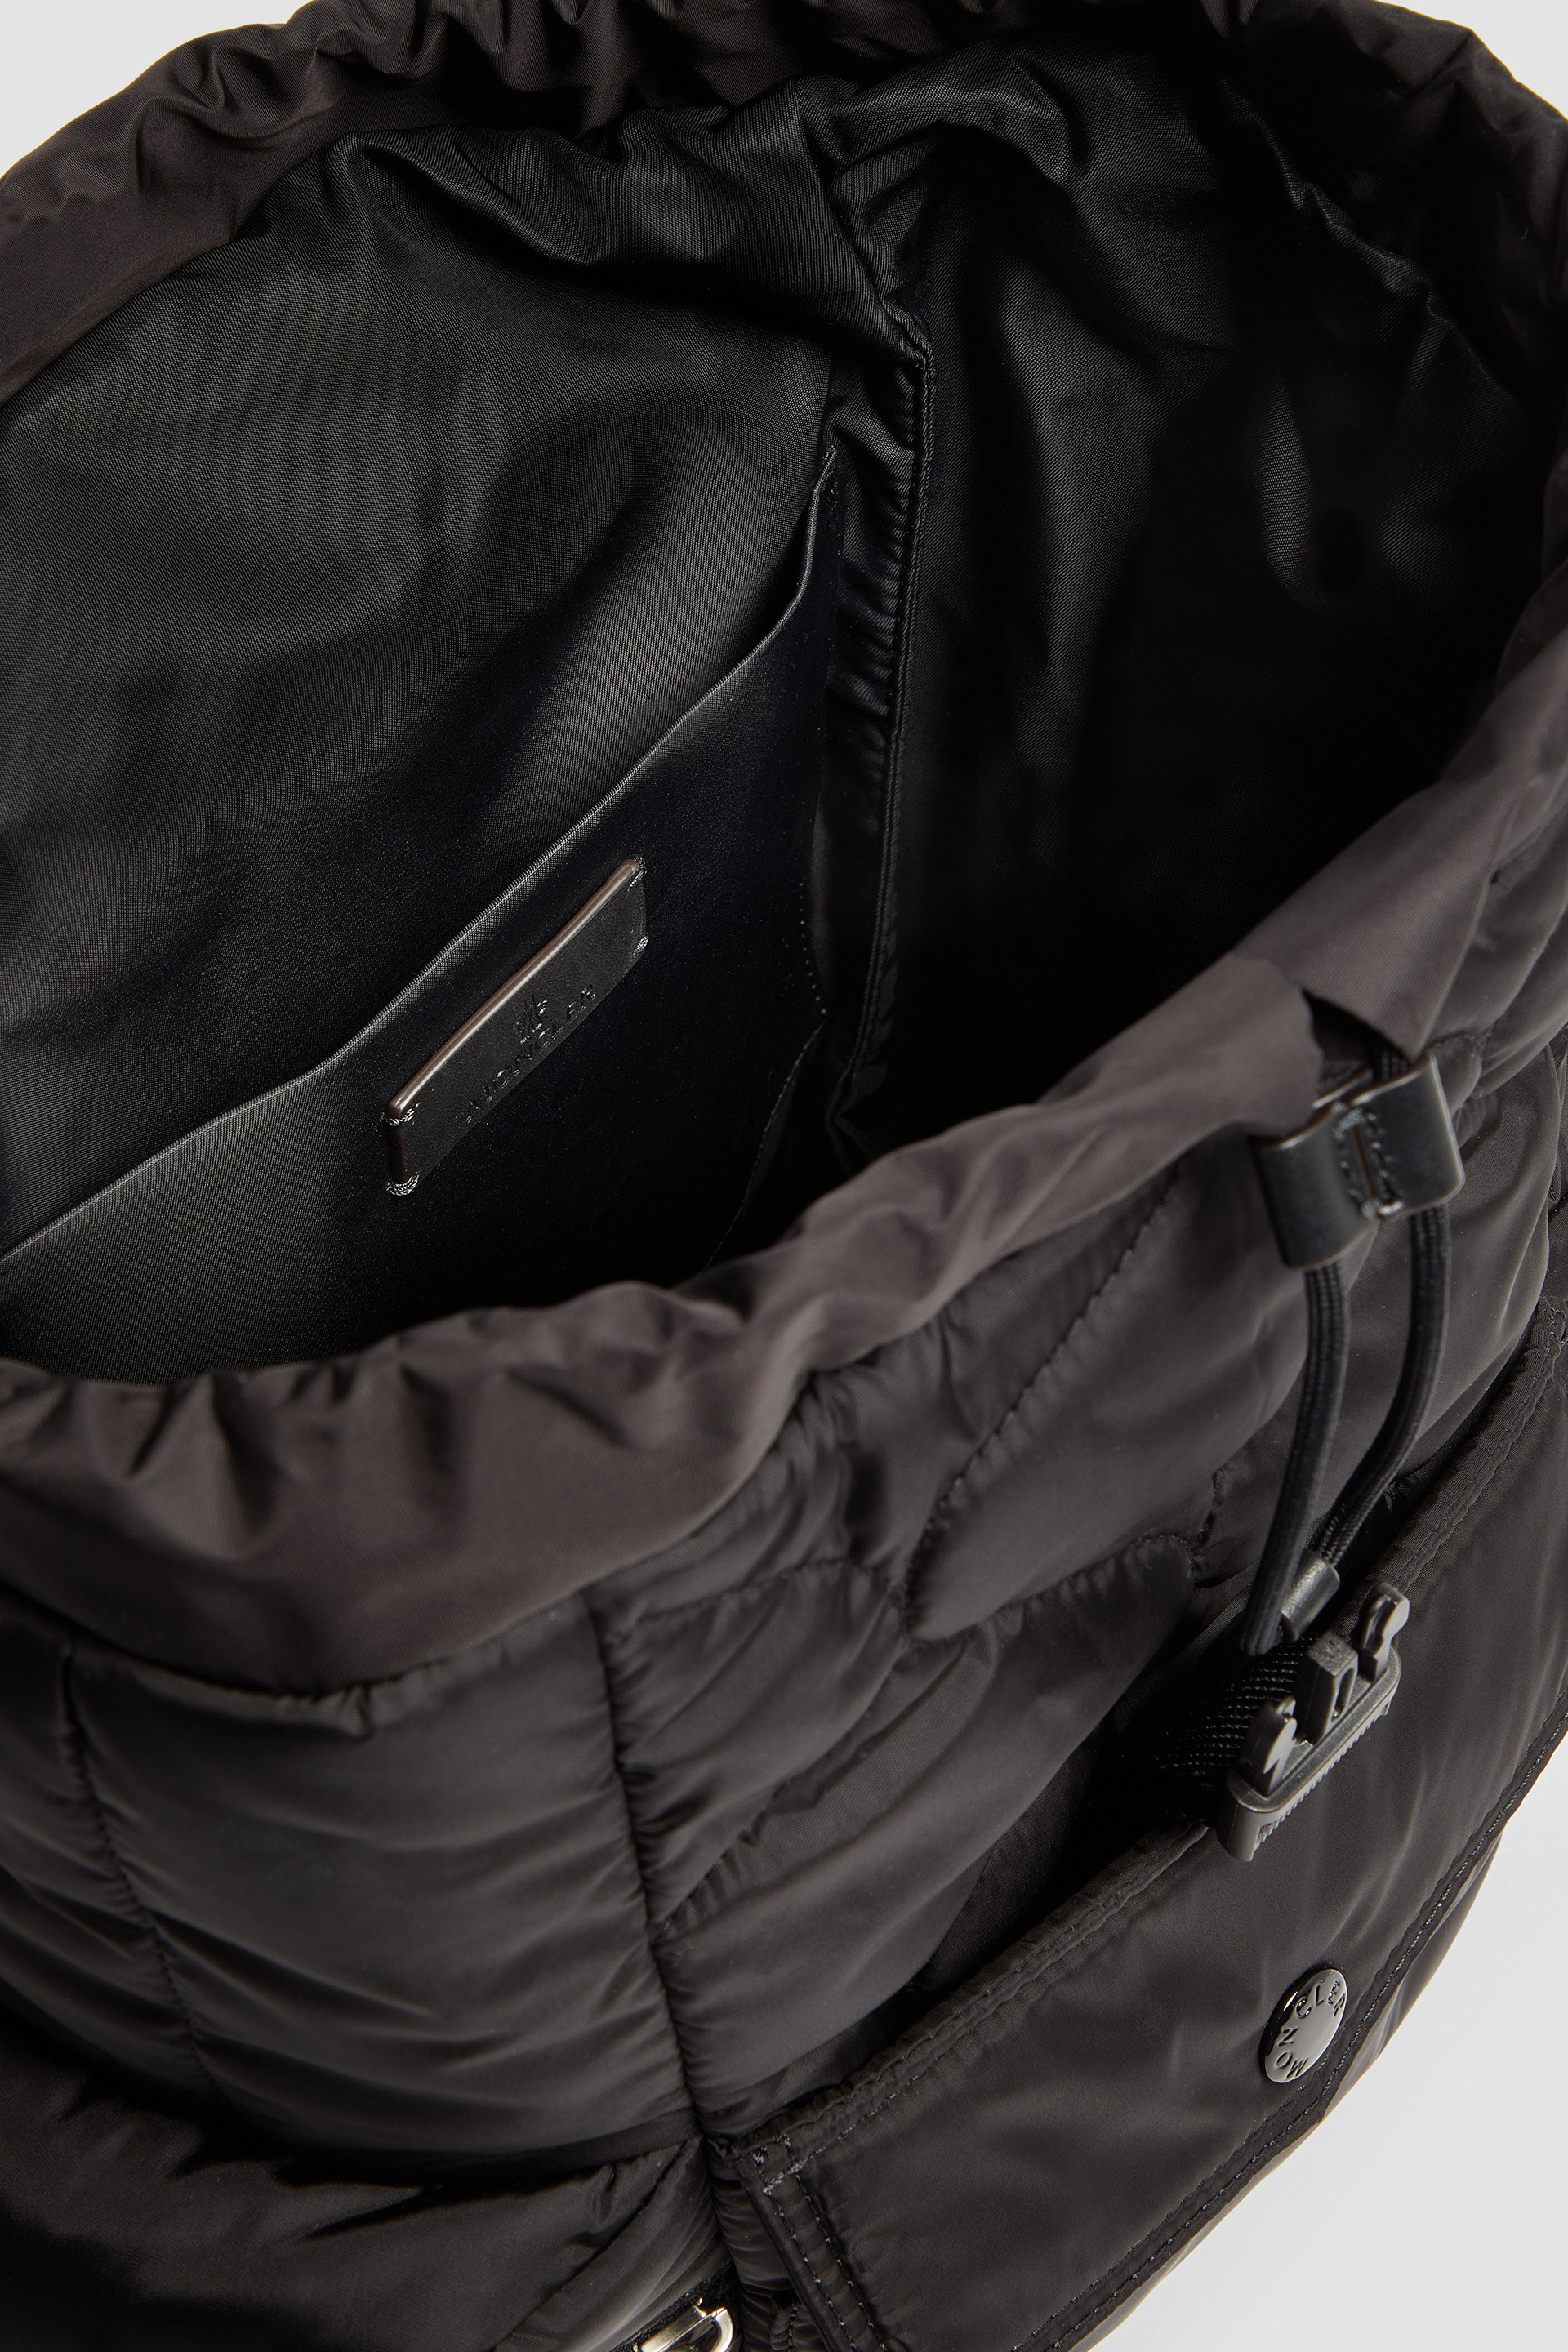 ブラック Astroバックパック : バッグu0026スモールアクセサリー 向けの レディース | モンクレール